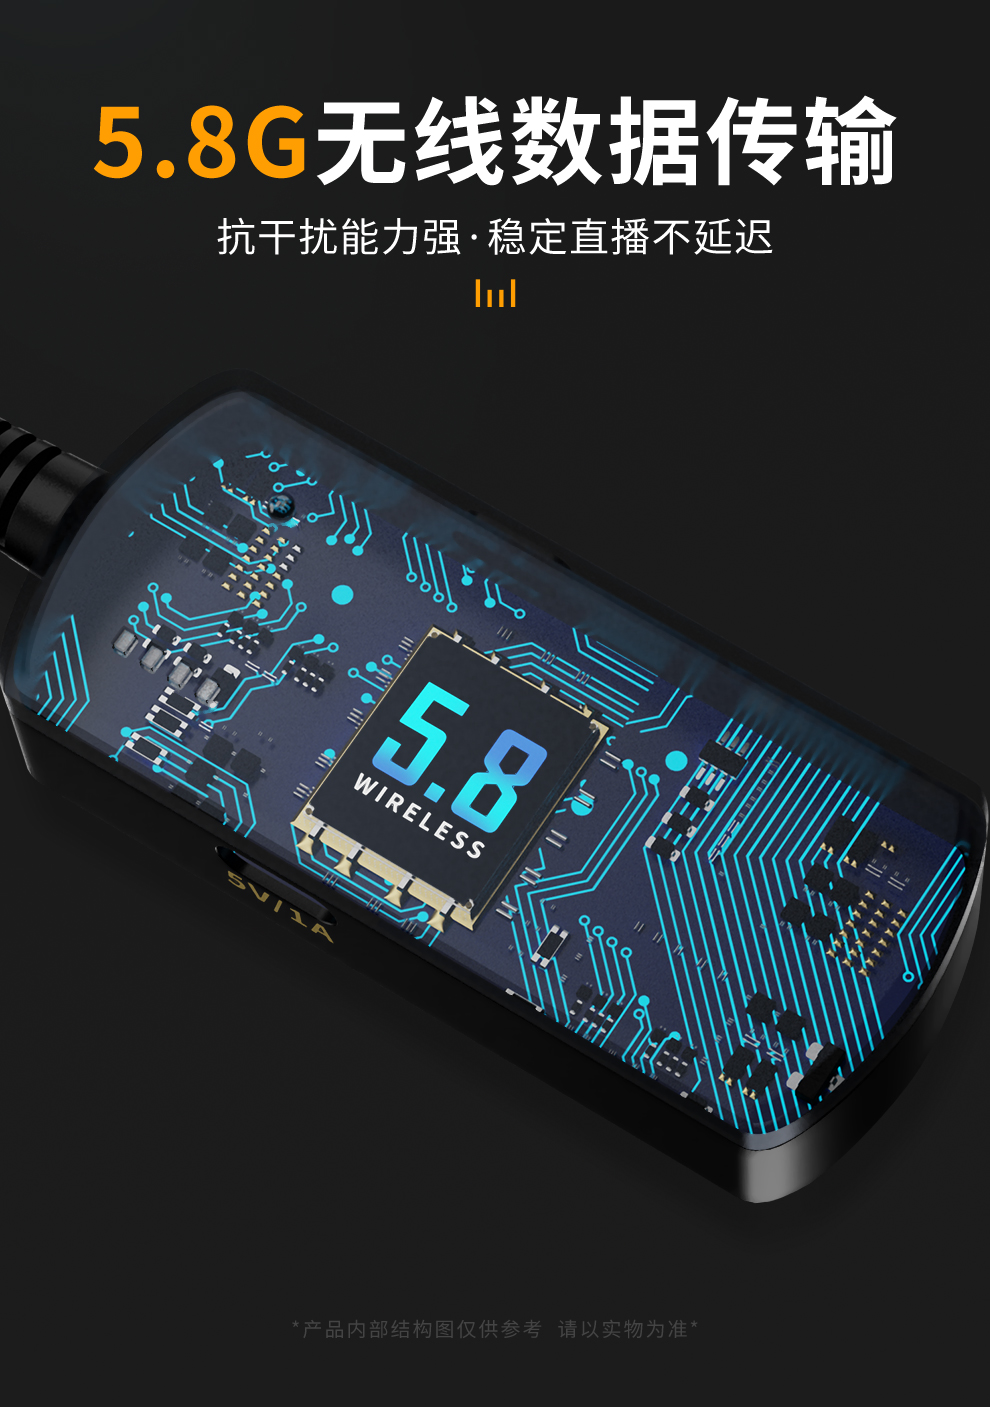 深圳5.8G无线直播耳机主播耳机哪里买